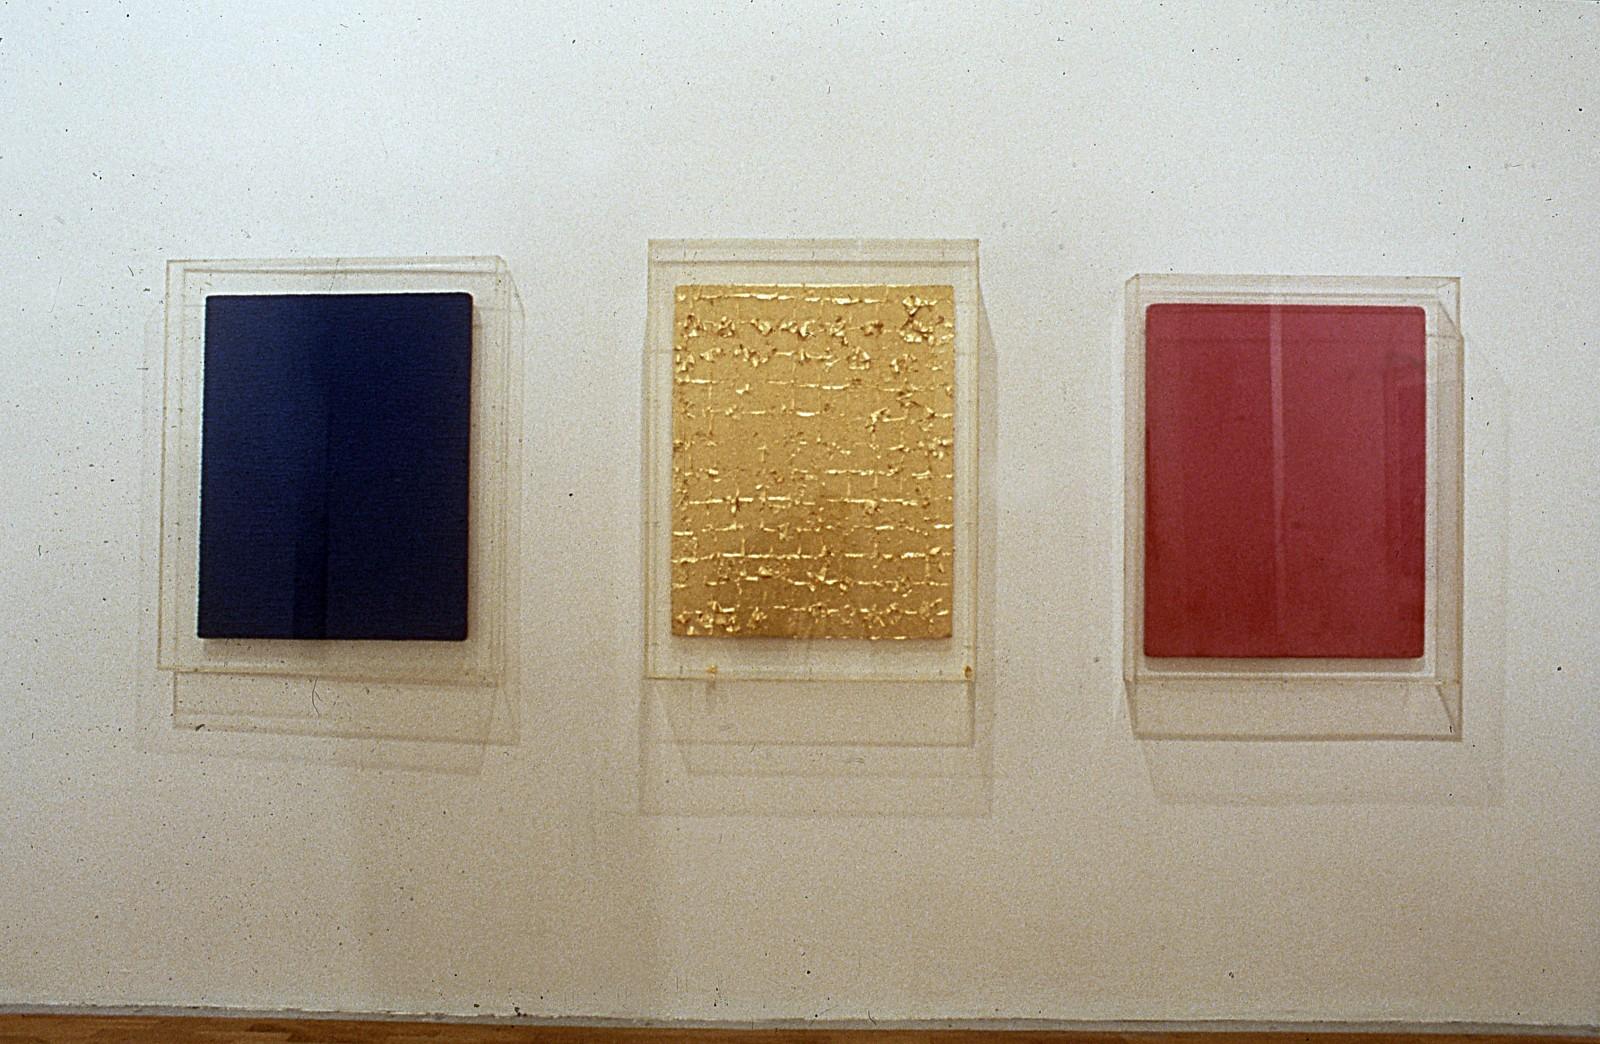 Vue de l'exposition "La Couleur seule : l'expérience du monochrome", Musée Saint-Pierre art contemporain, 1988 (IKB 68, MG 8, MP 19)